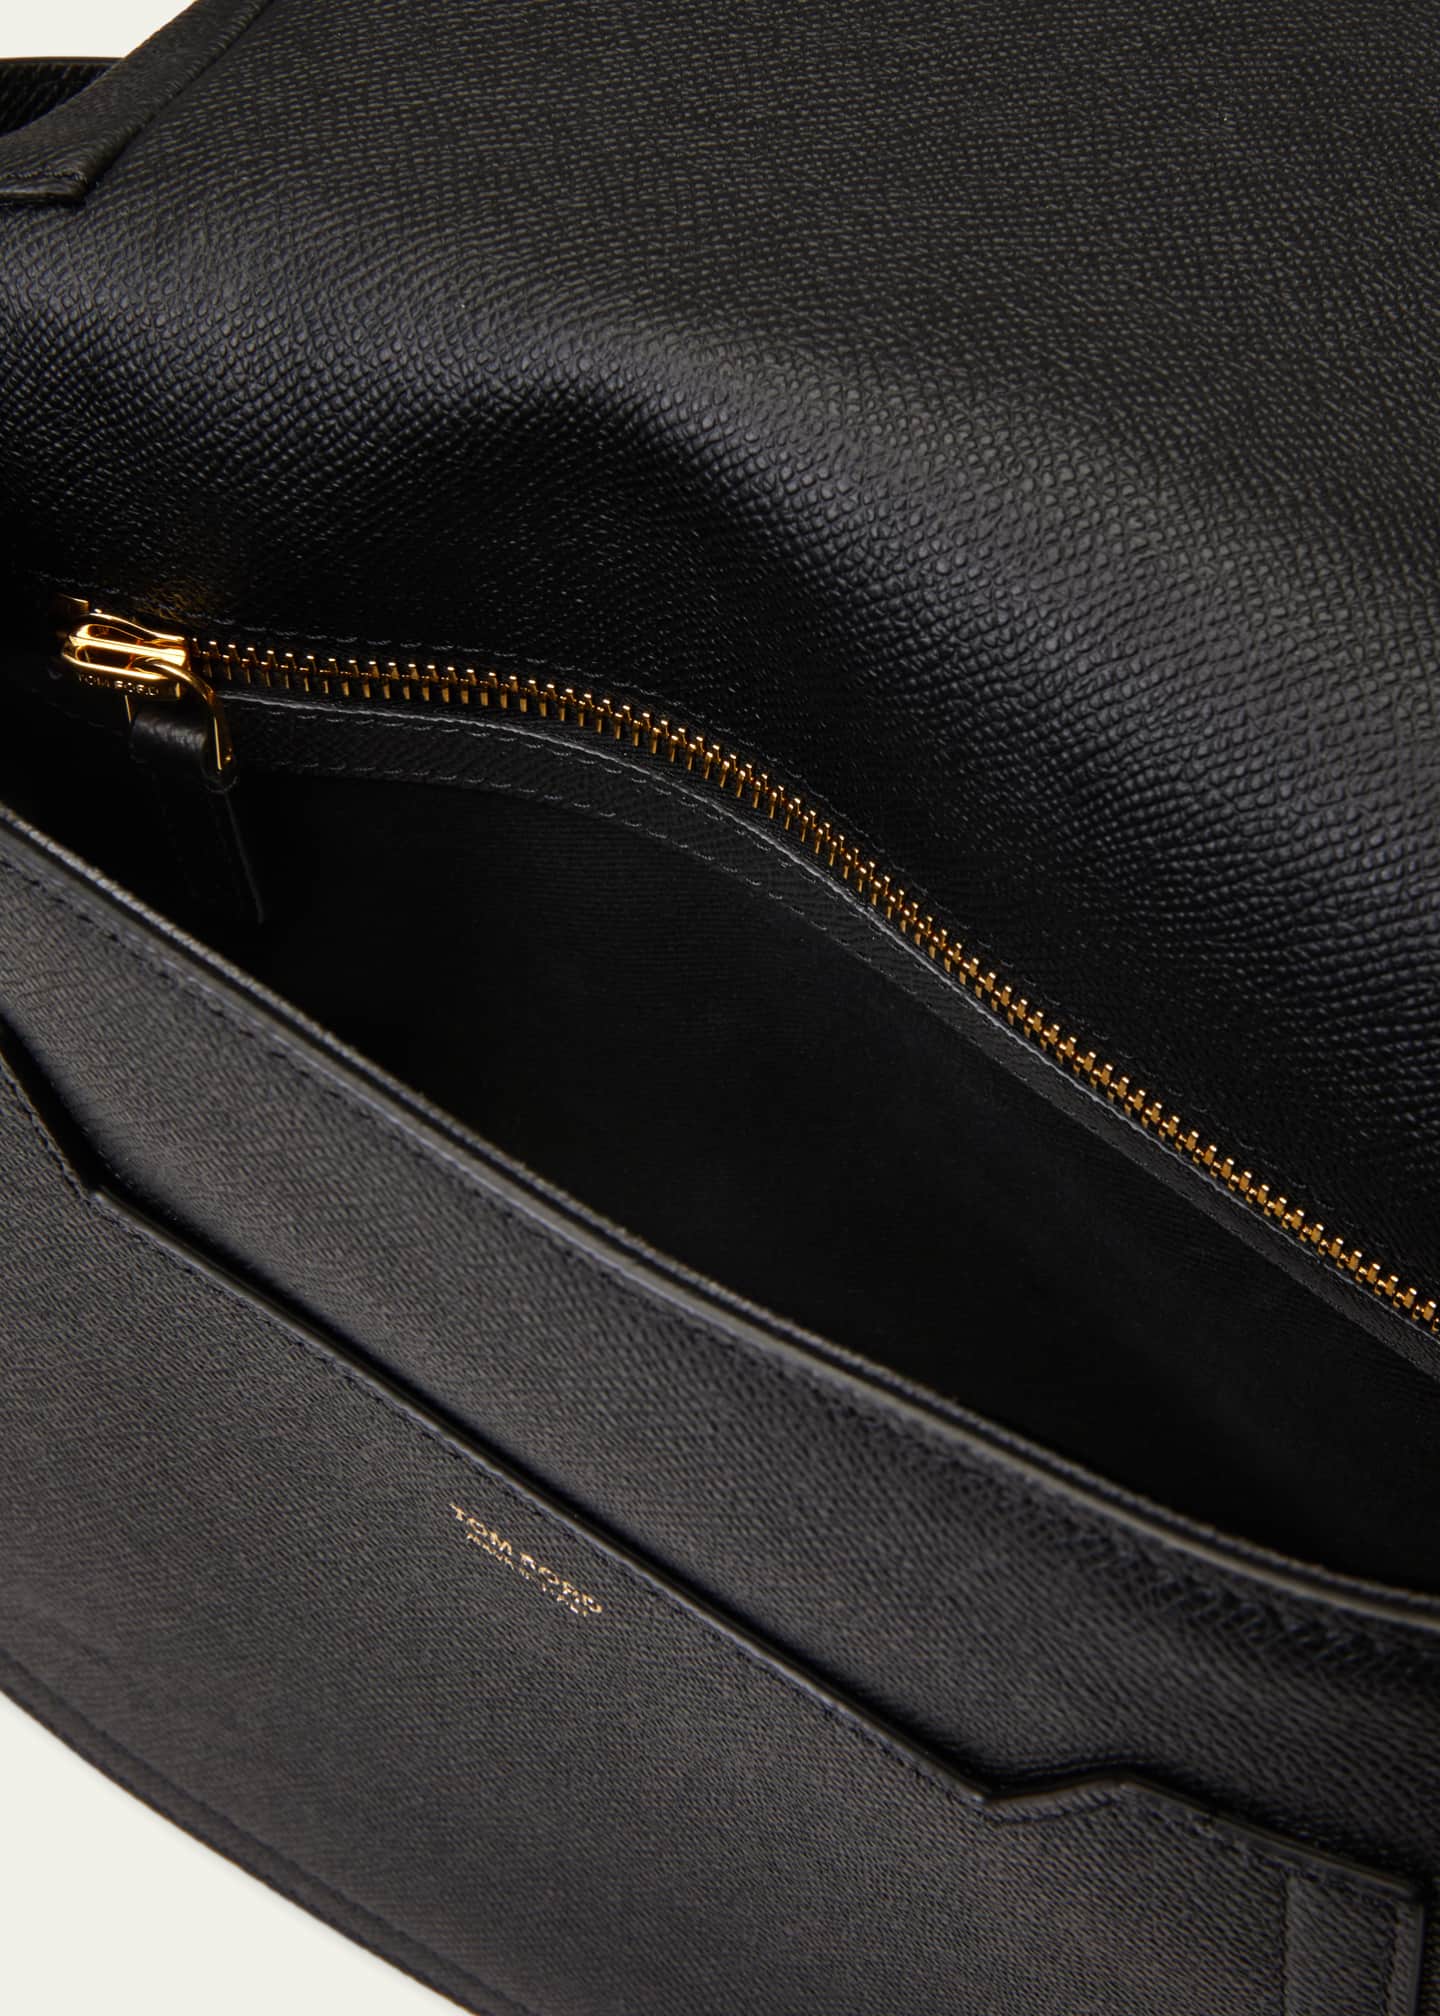 TOM FORD Jennifer Medium Grained Leather Shoulder Bag - Bergdorf Goodman